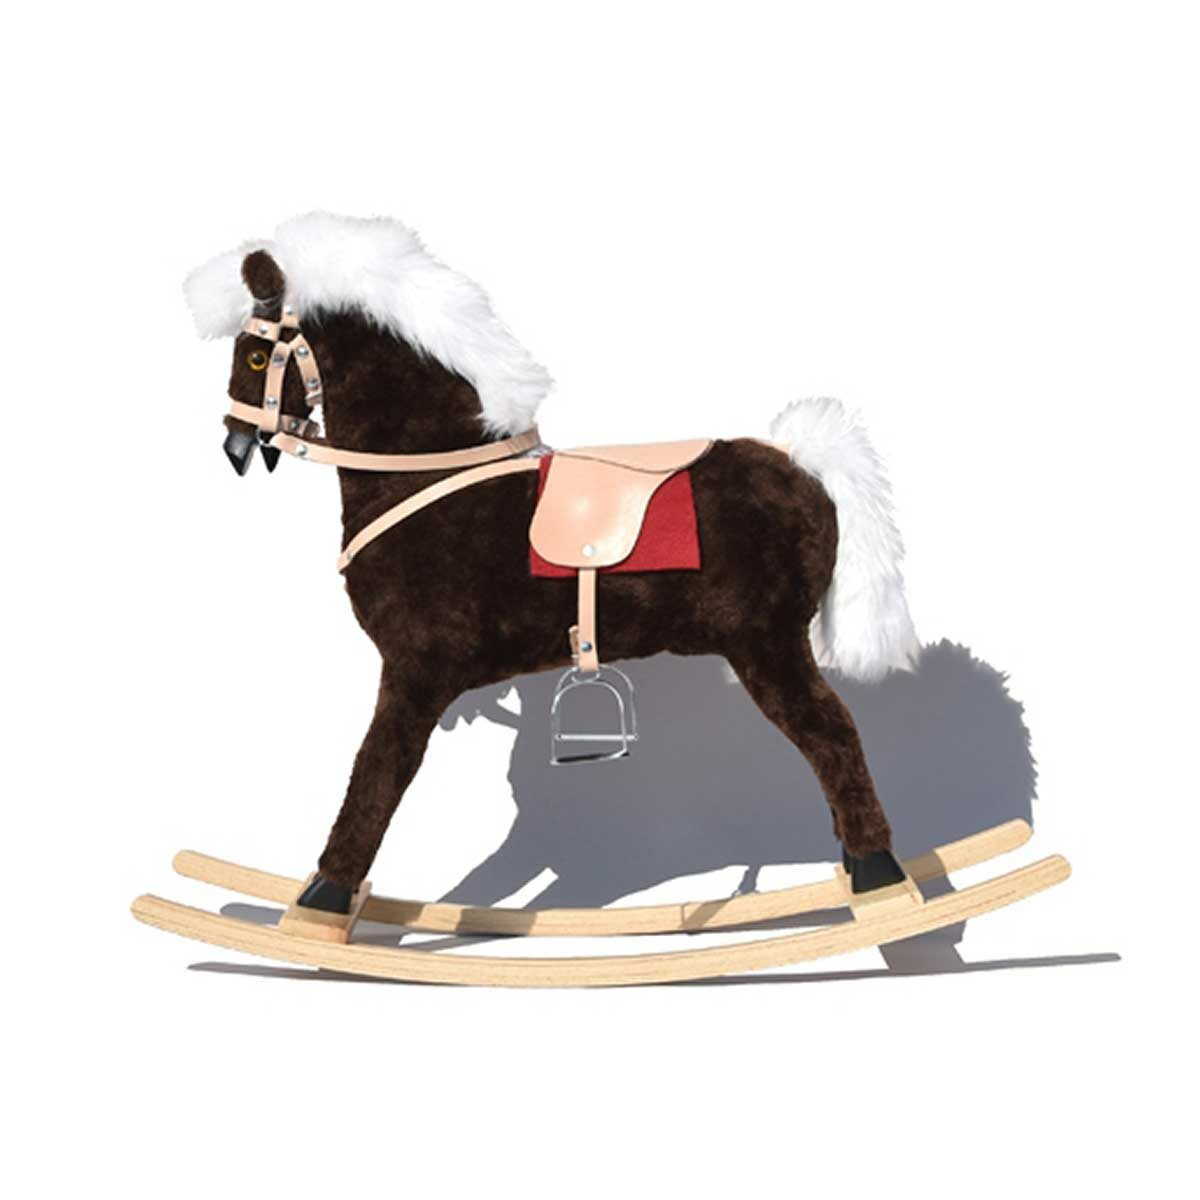 GLORIOSA rocking horse with vinyl saddle